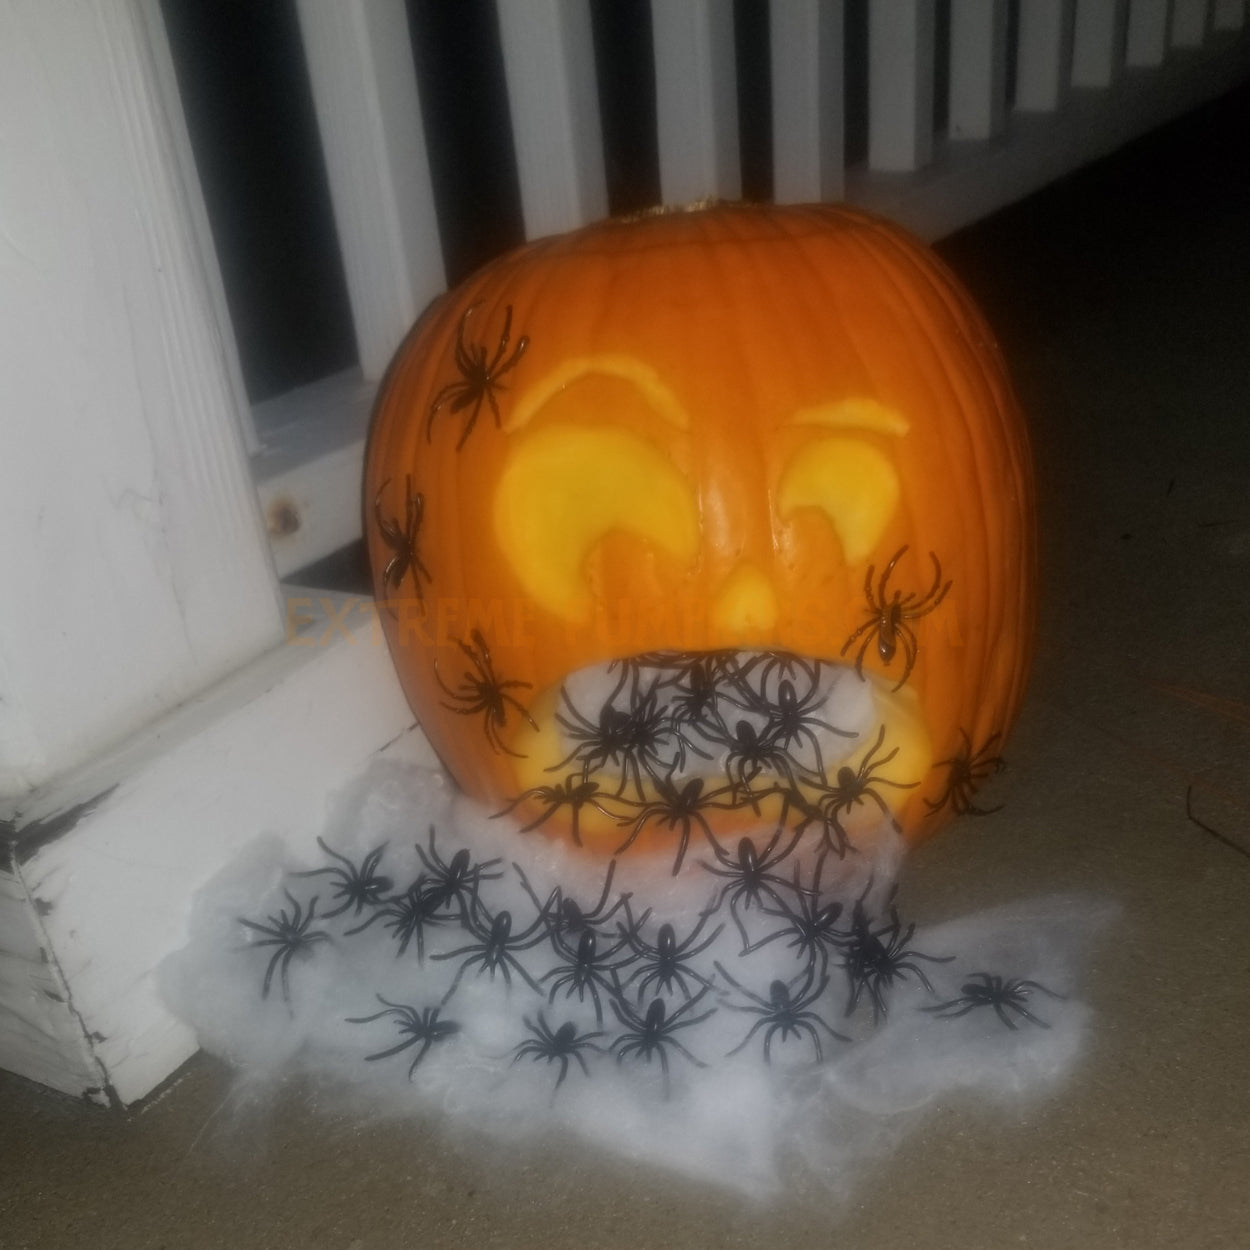 Spidermouth Pumpkin